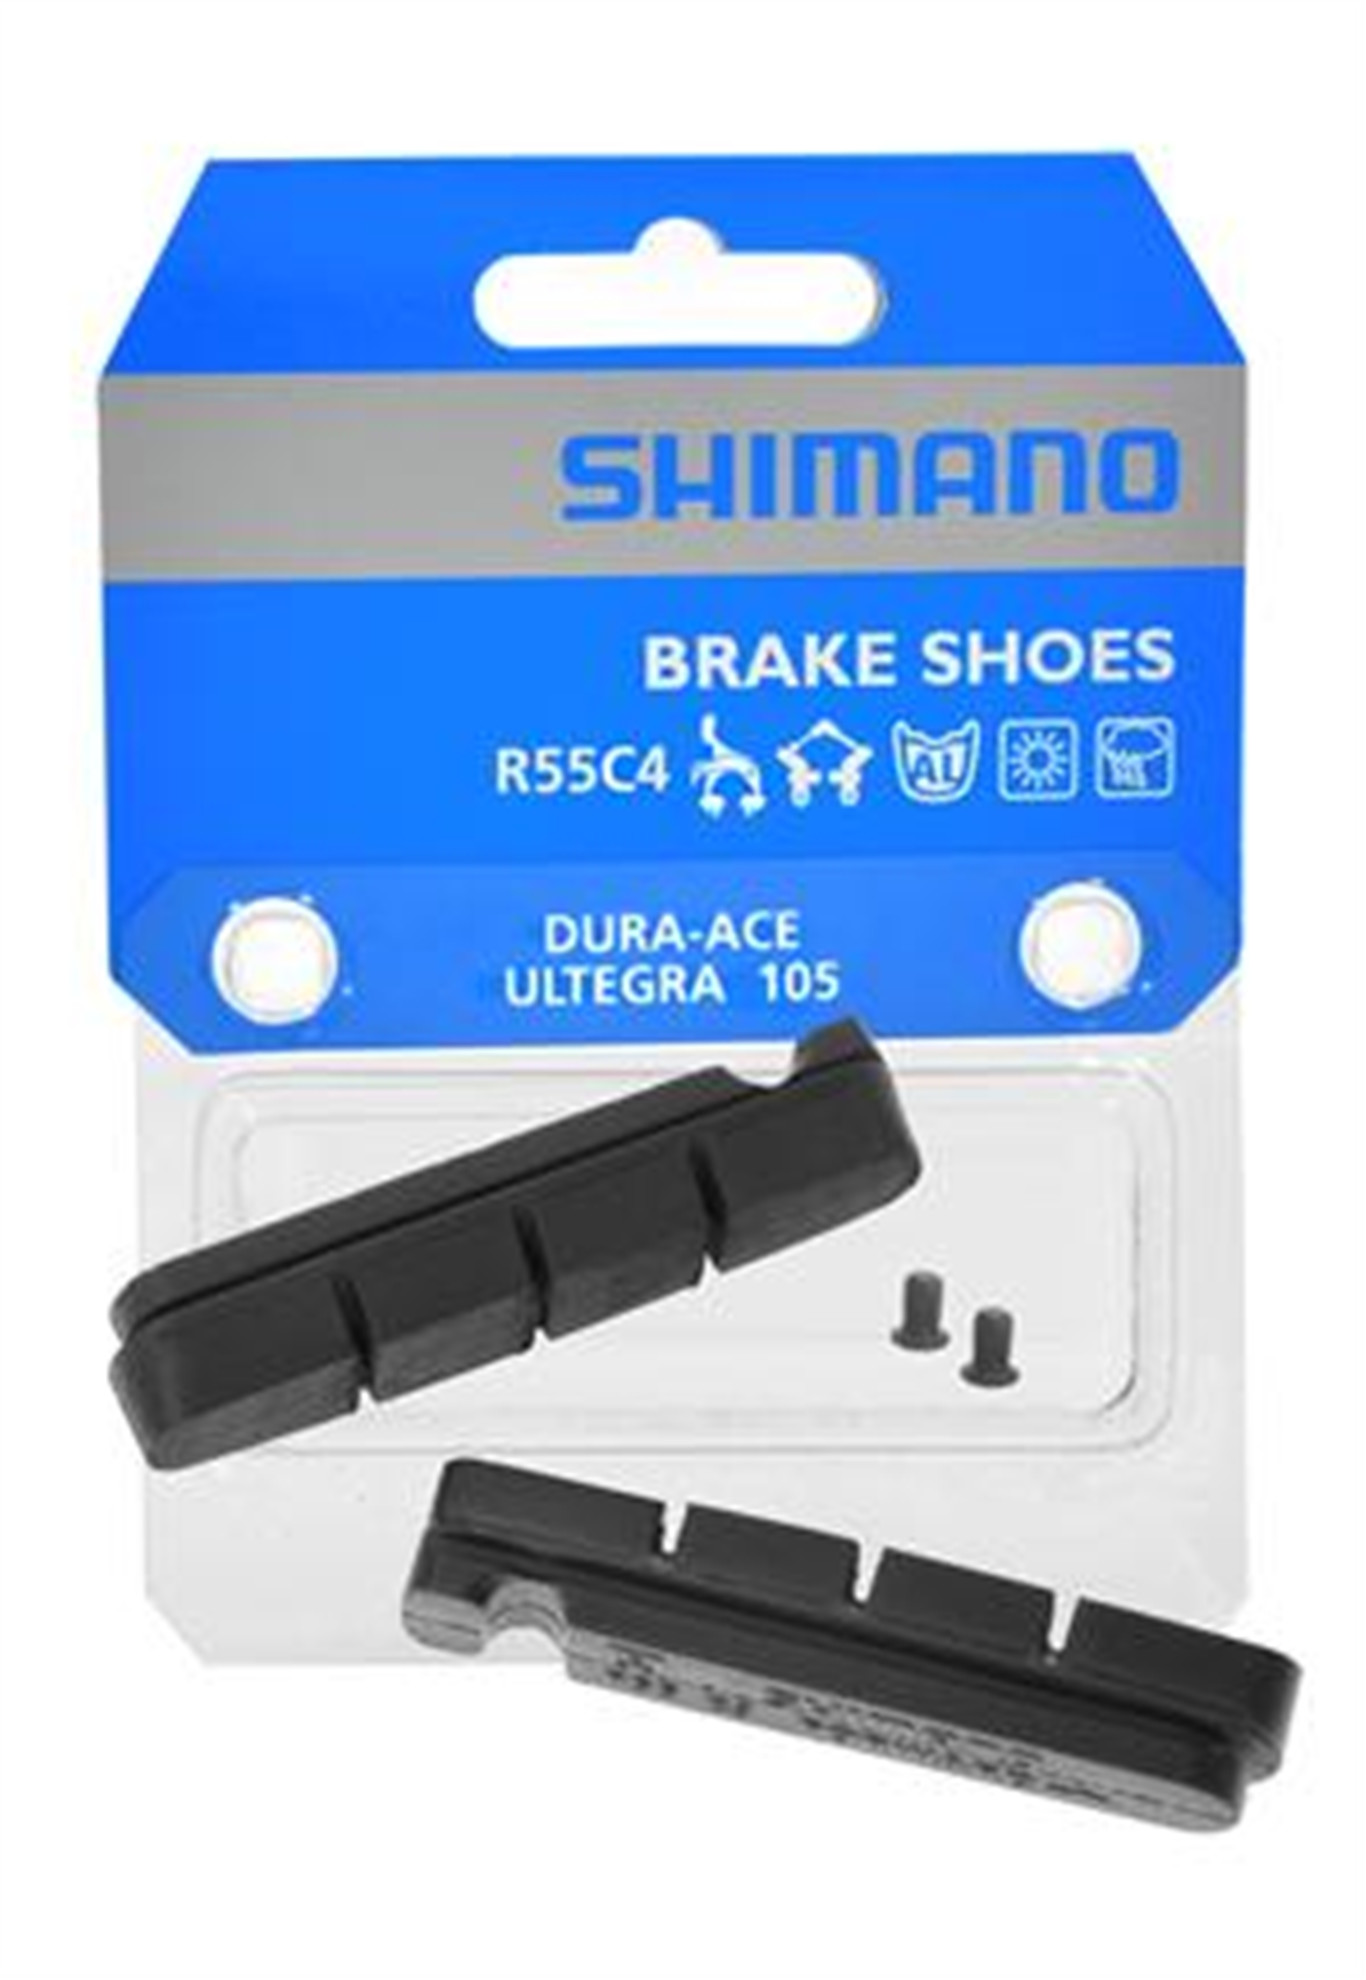 Shimano R55C4 - Okładziny Do Hamulców (Y8L298060)